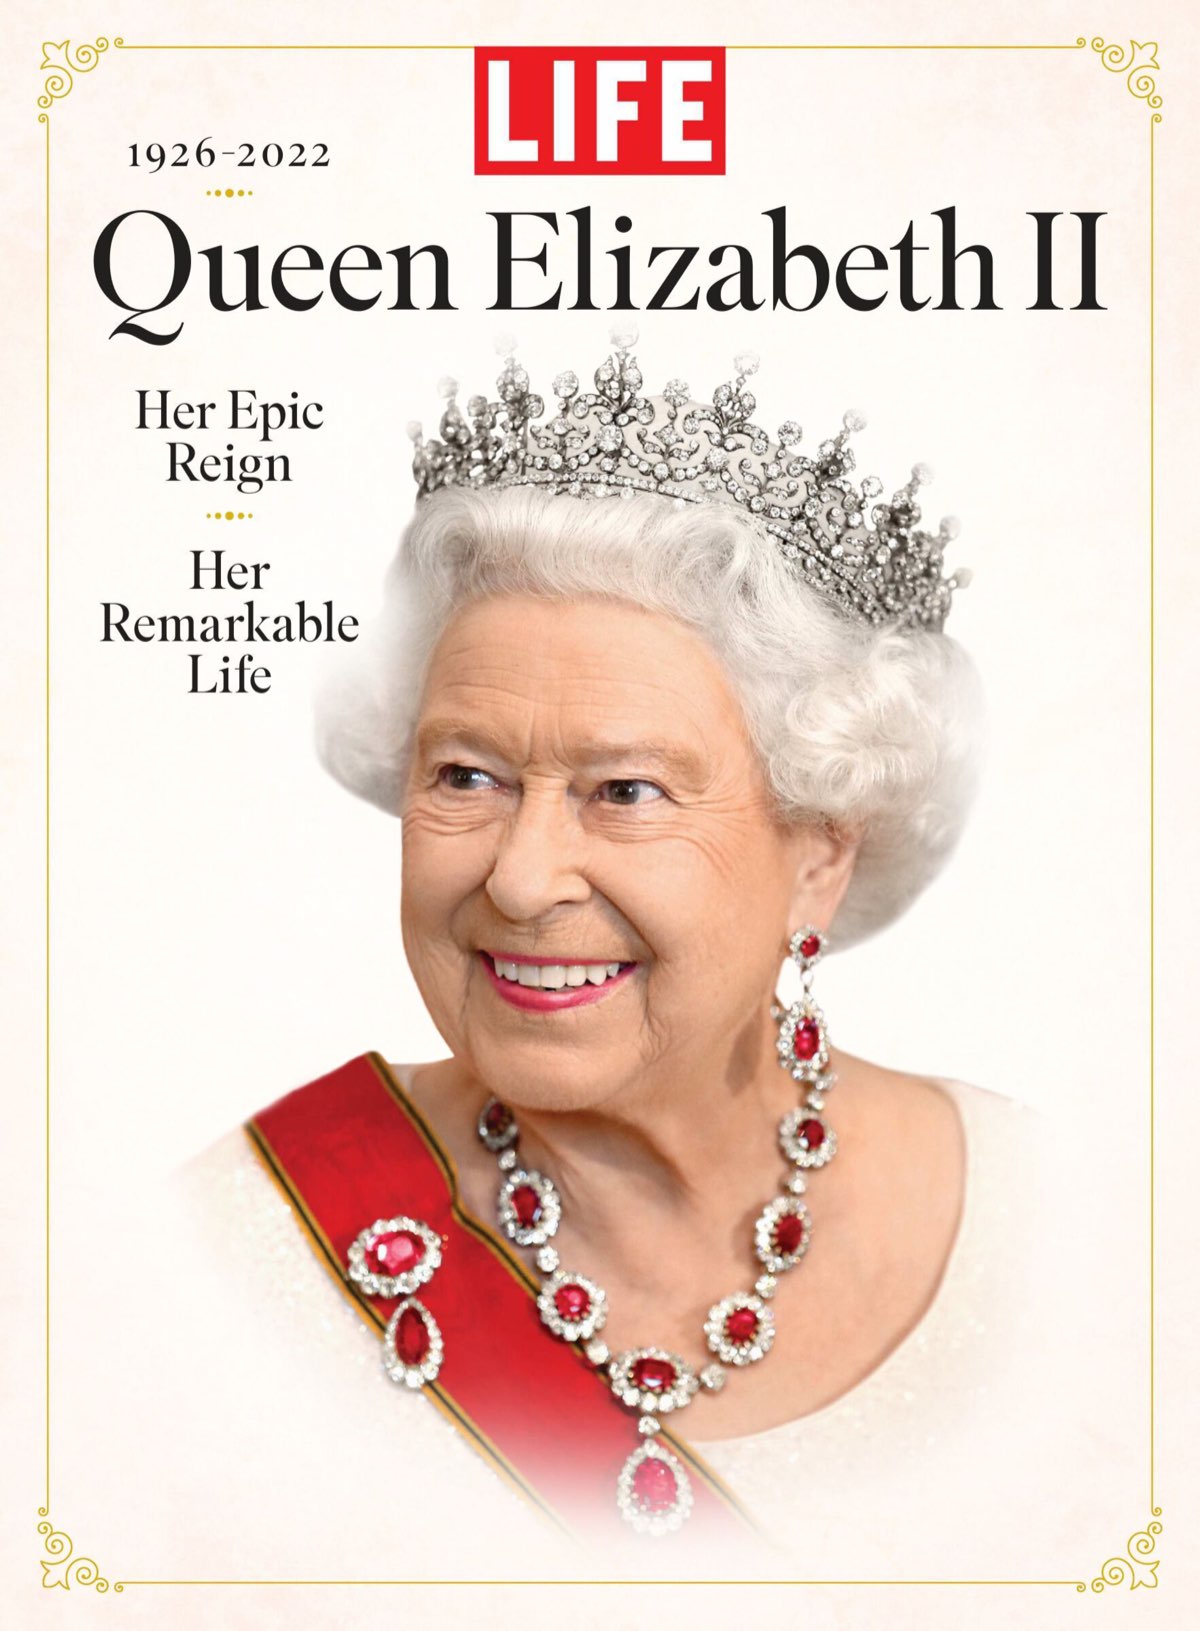 LIFE - Queen Elizabeth II [2022]